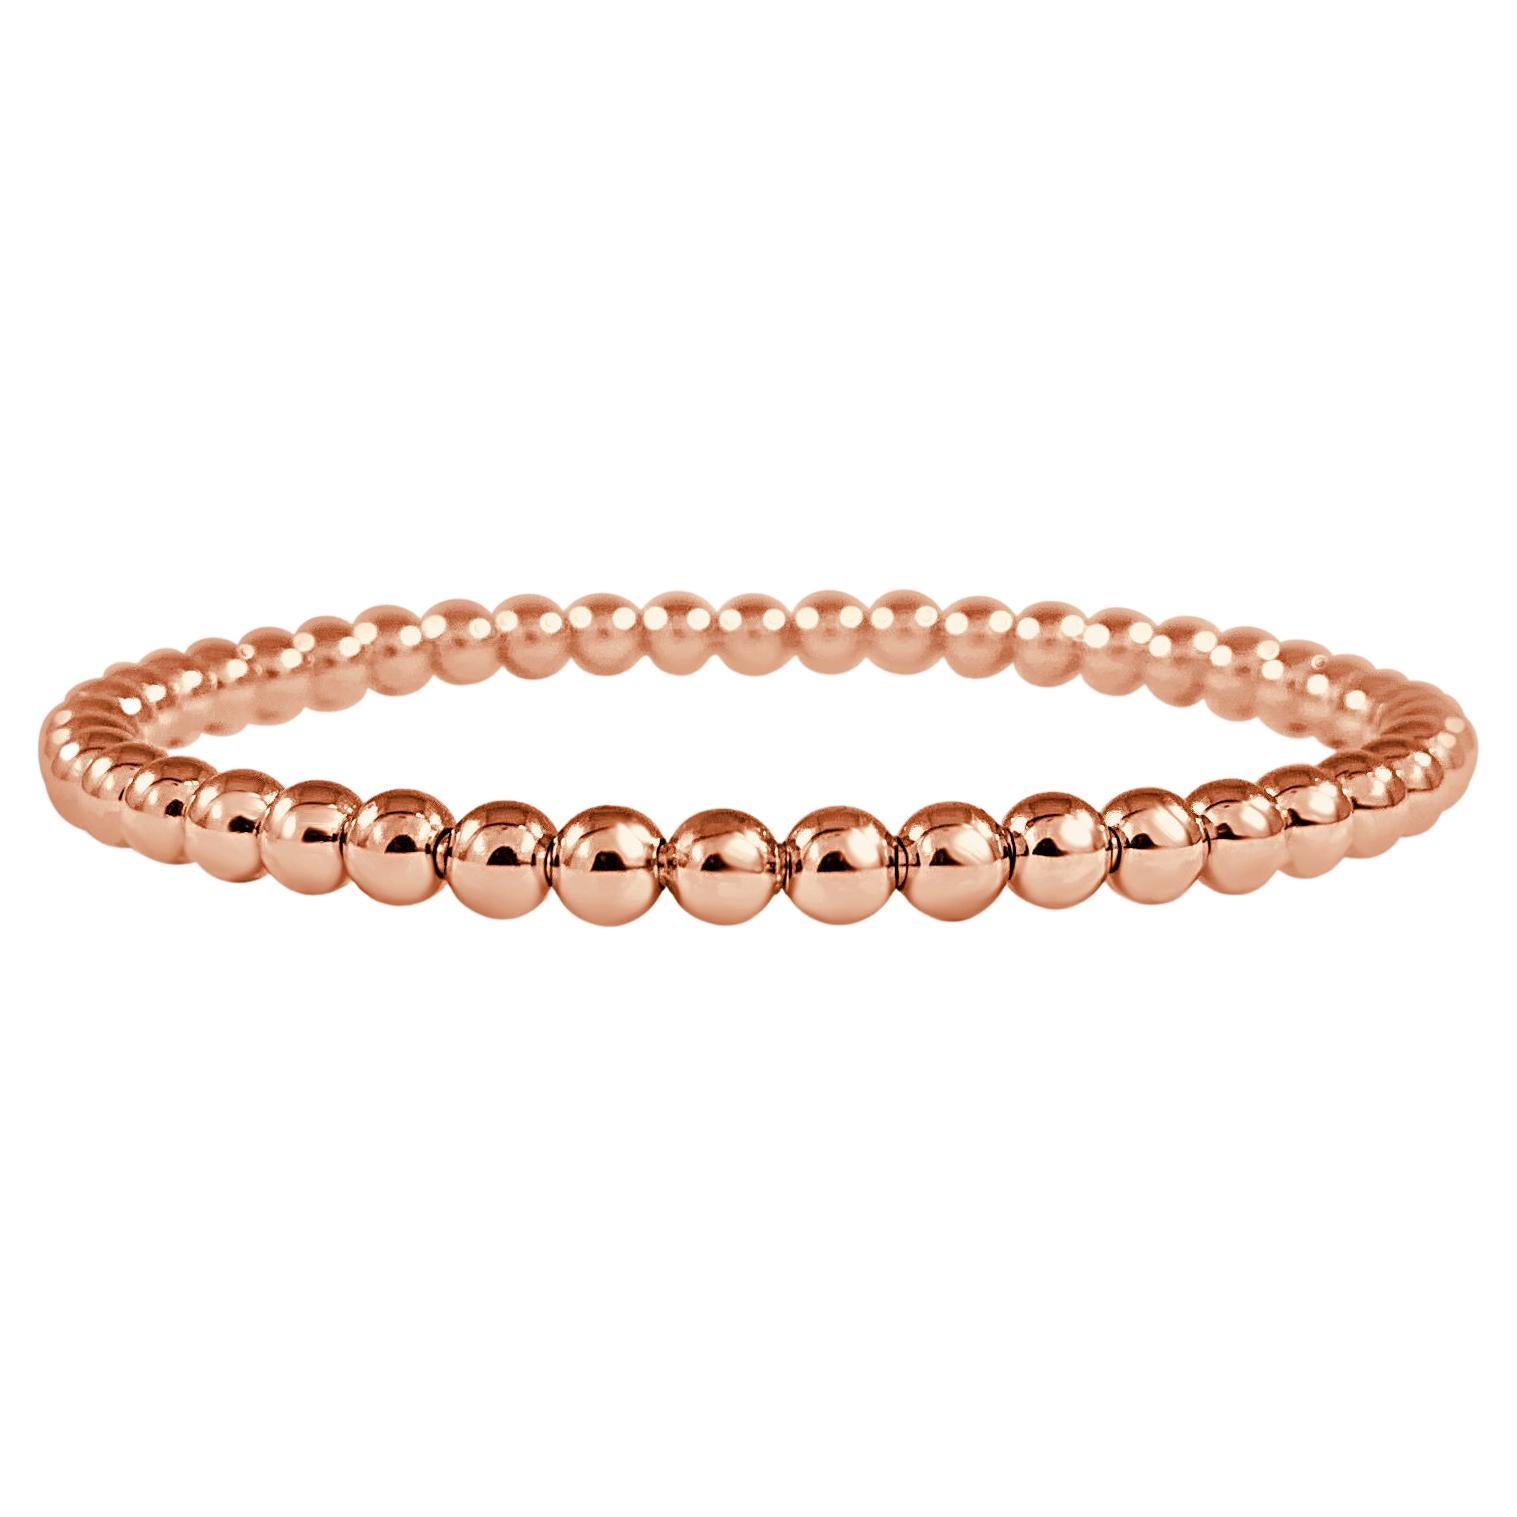 Luxury 14K Rose Gold Plated Bead Bracelet Inspirational Gold Bracelet for Women 